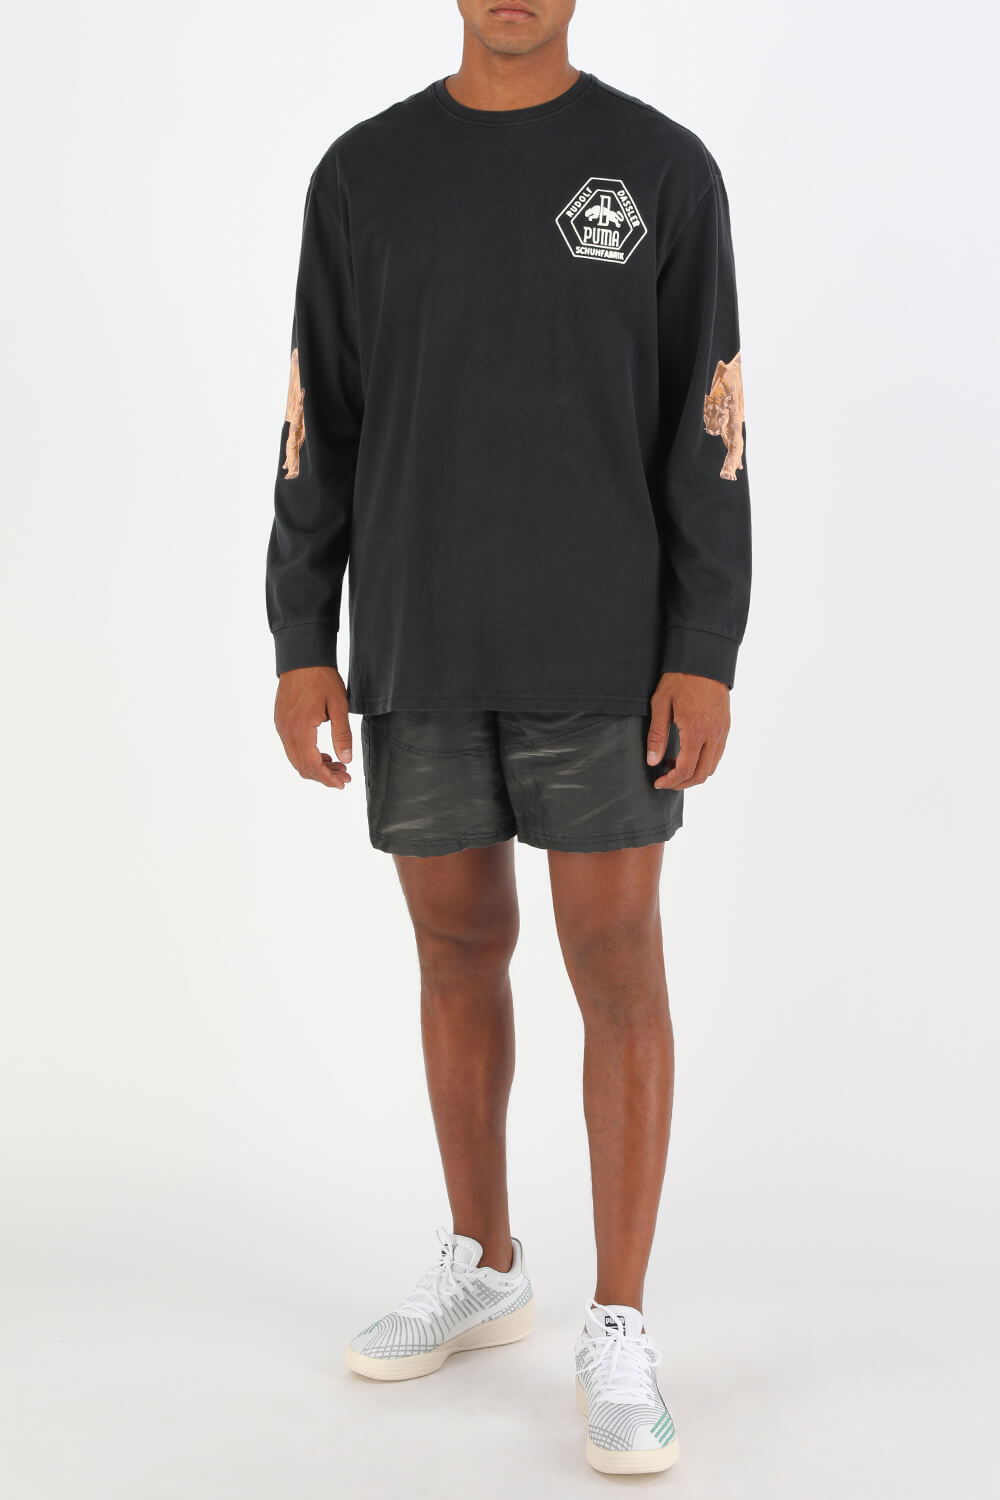 Puma X Rhuigi Shorts in Black PUMA